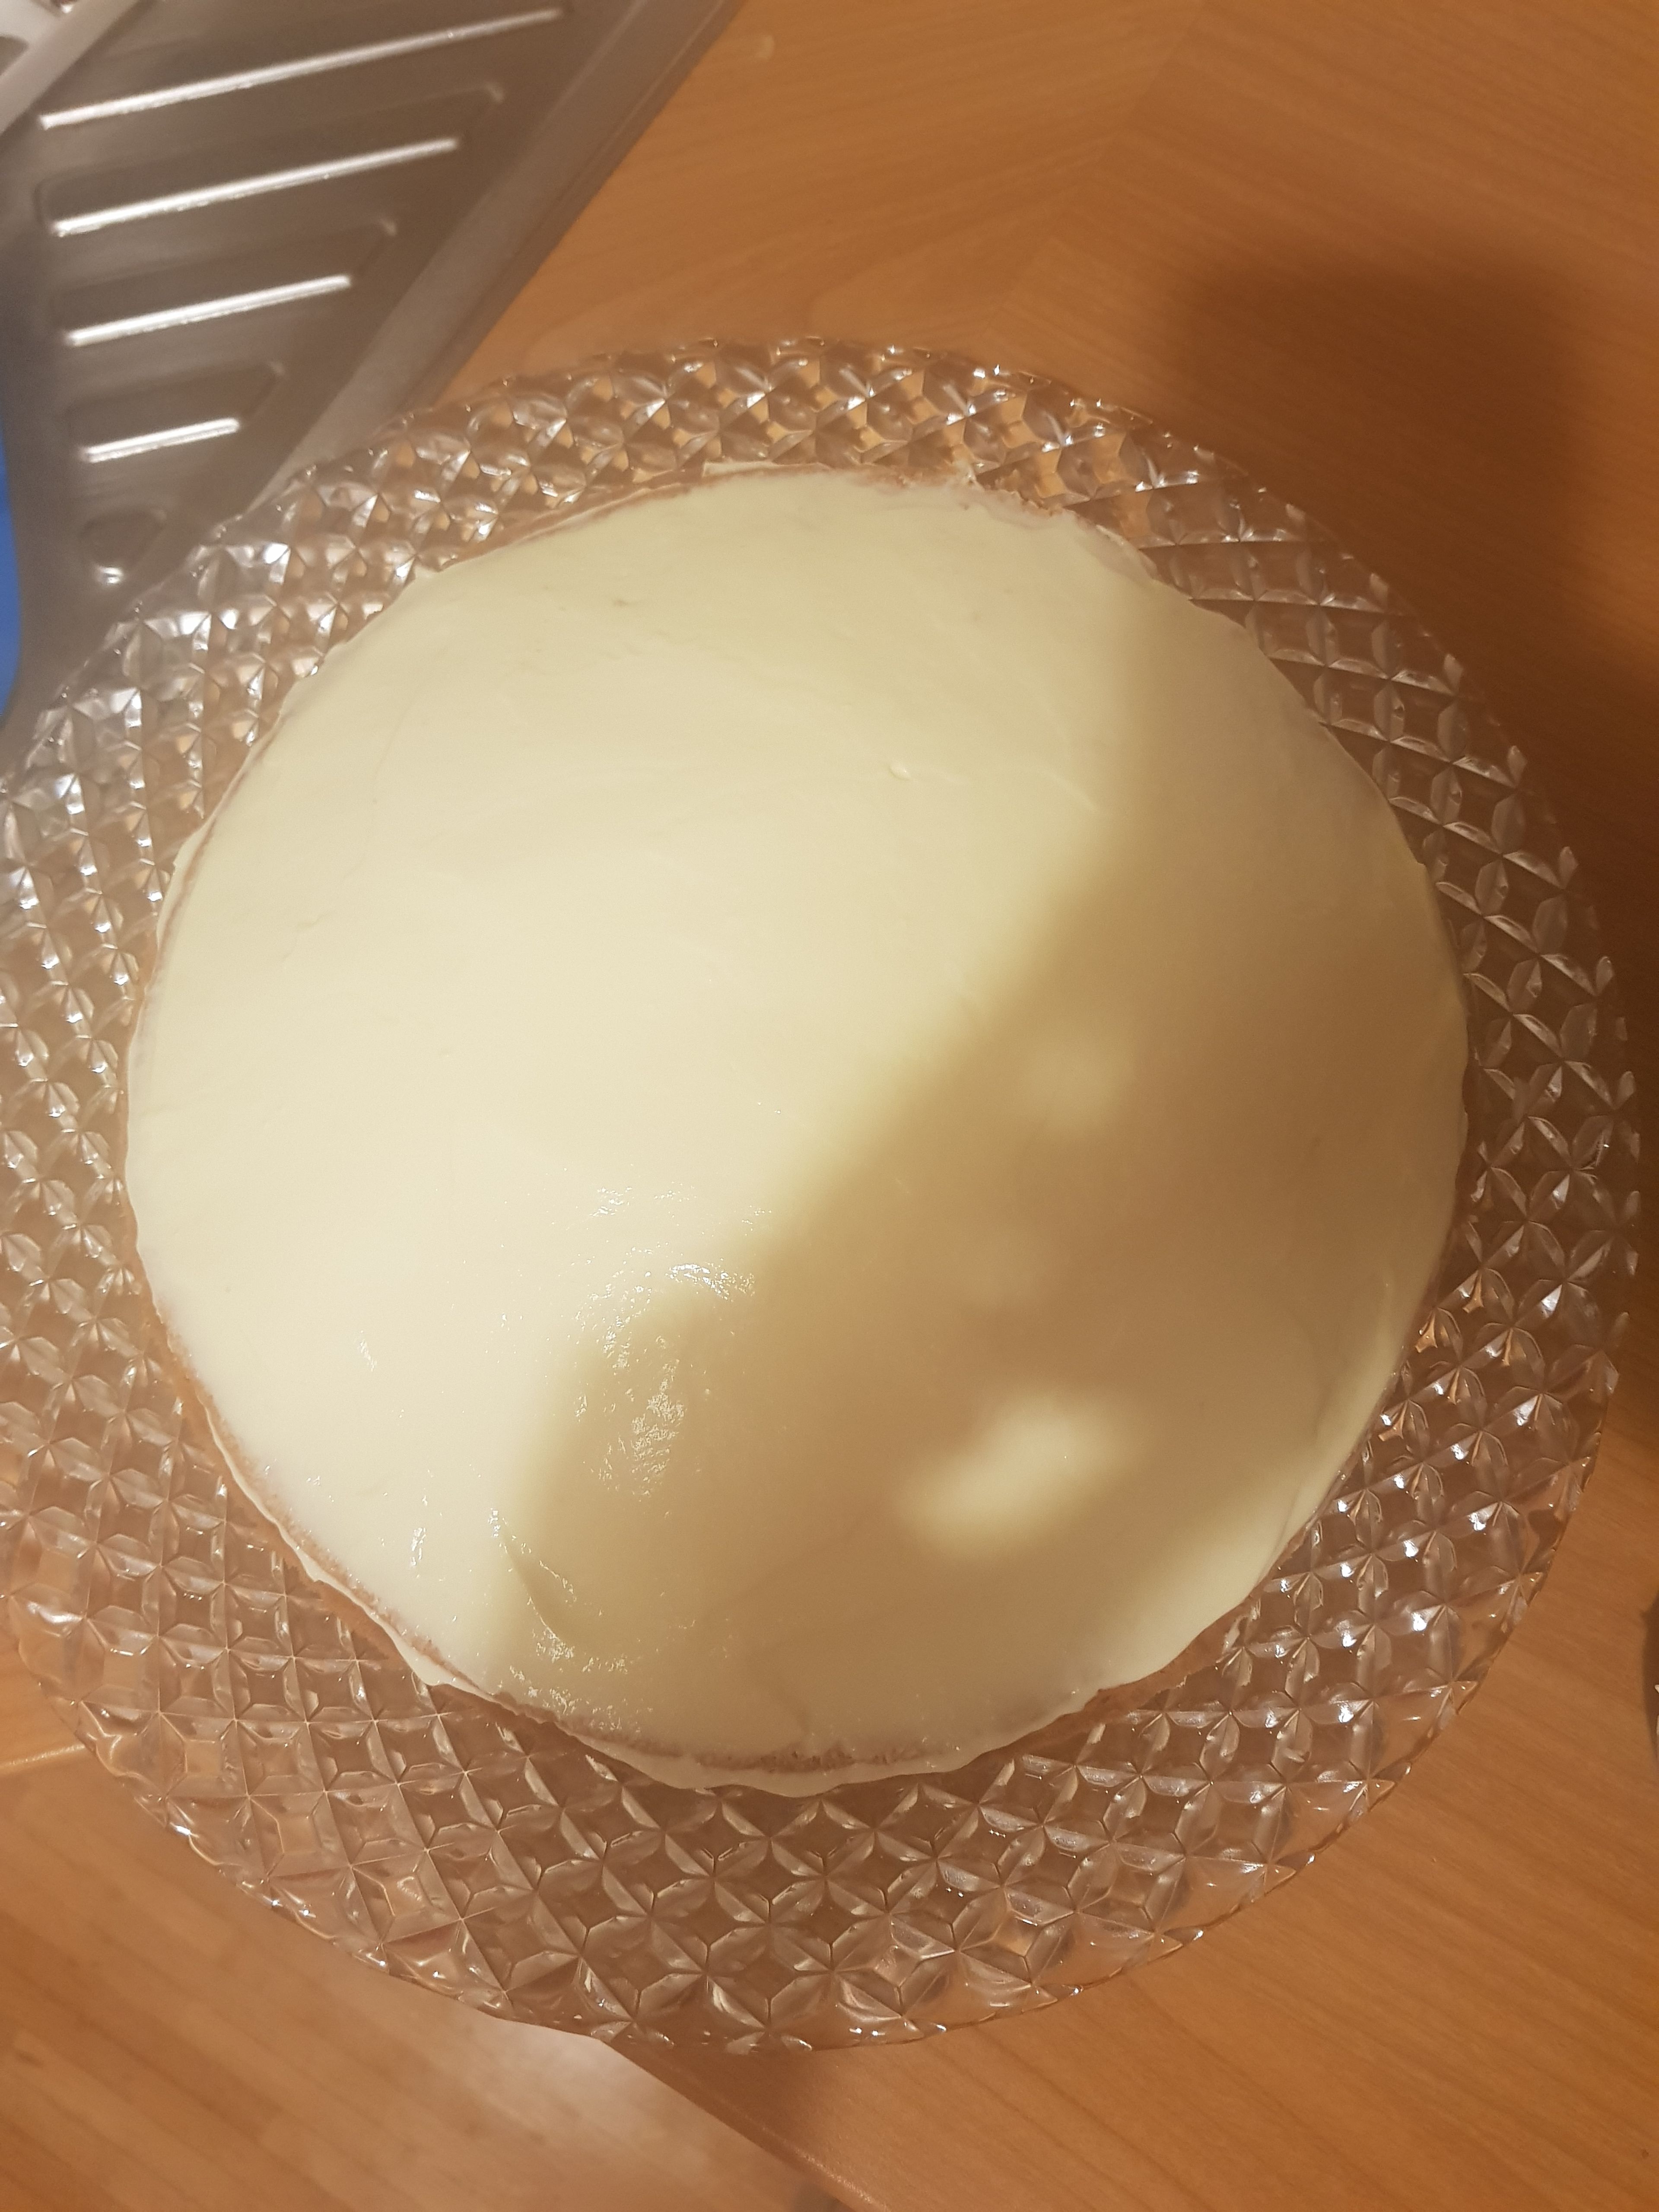 Den abgekühlten Kuchenboden am besten auf eine größere Platte legen und die Zitronen- Mascarpone-Creme darauf gut verteilen.
Kuchen im Kühlschrank ca. 1 Std. abkühlen lassen.